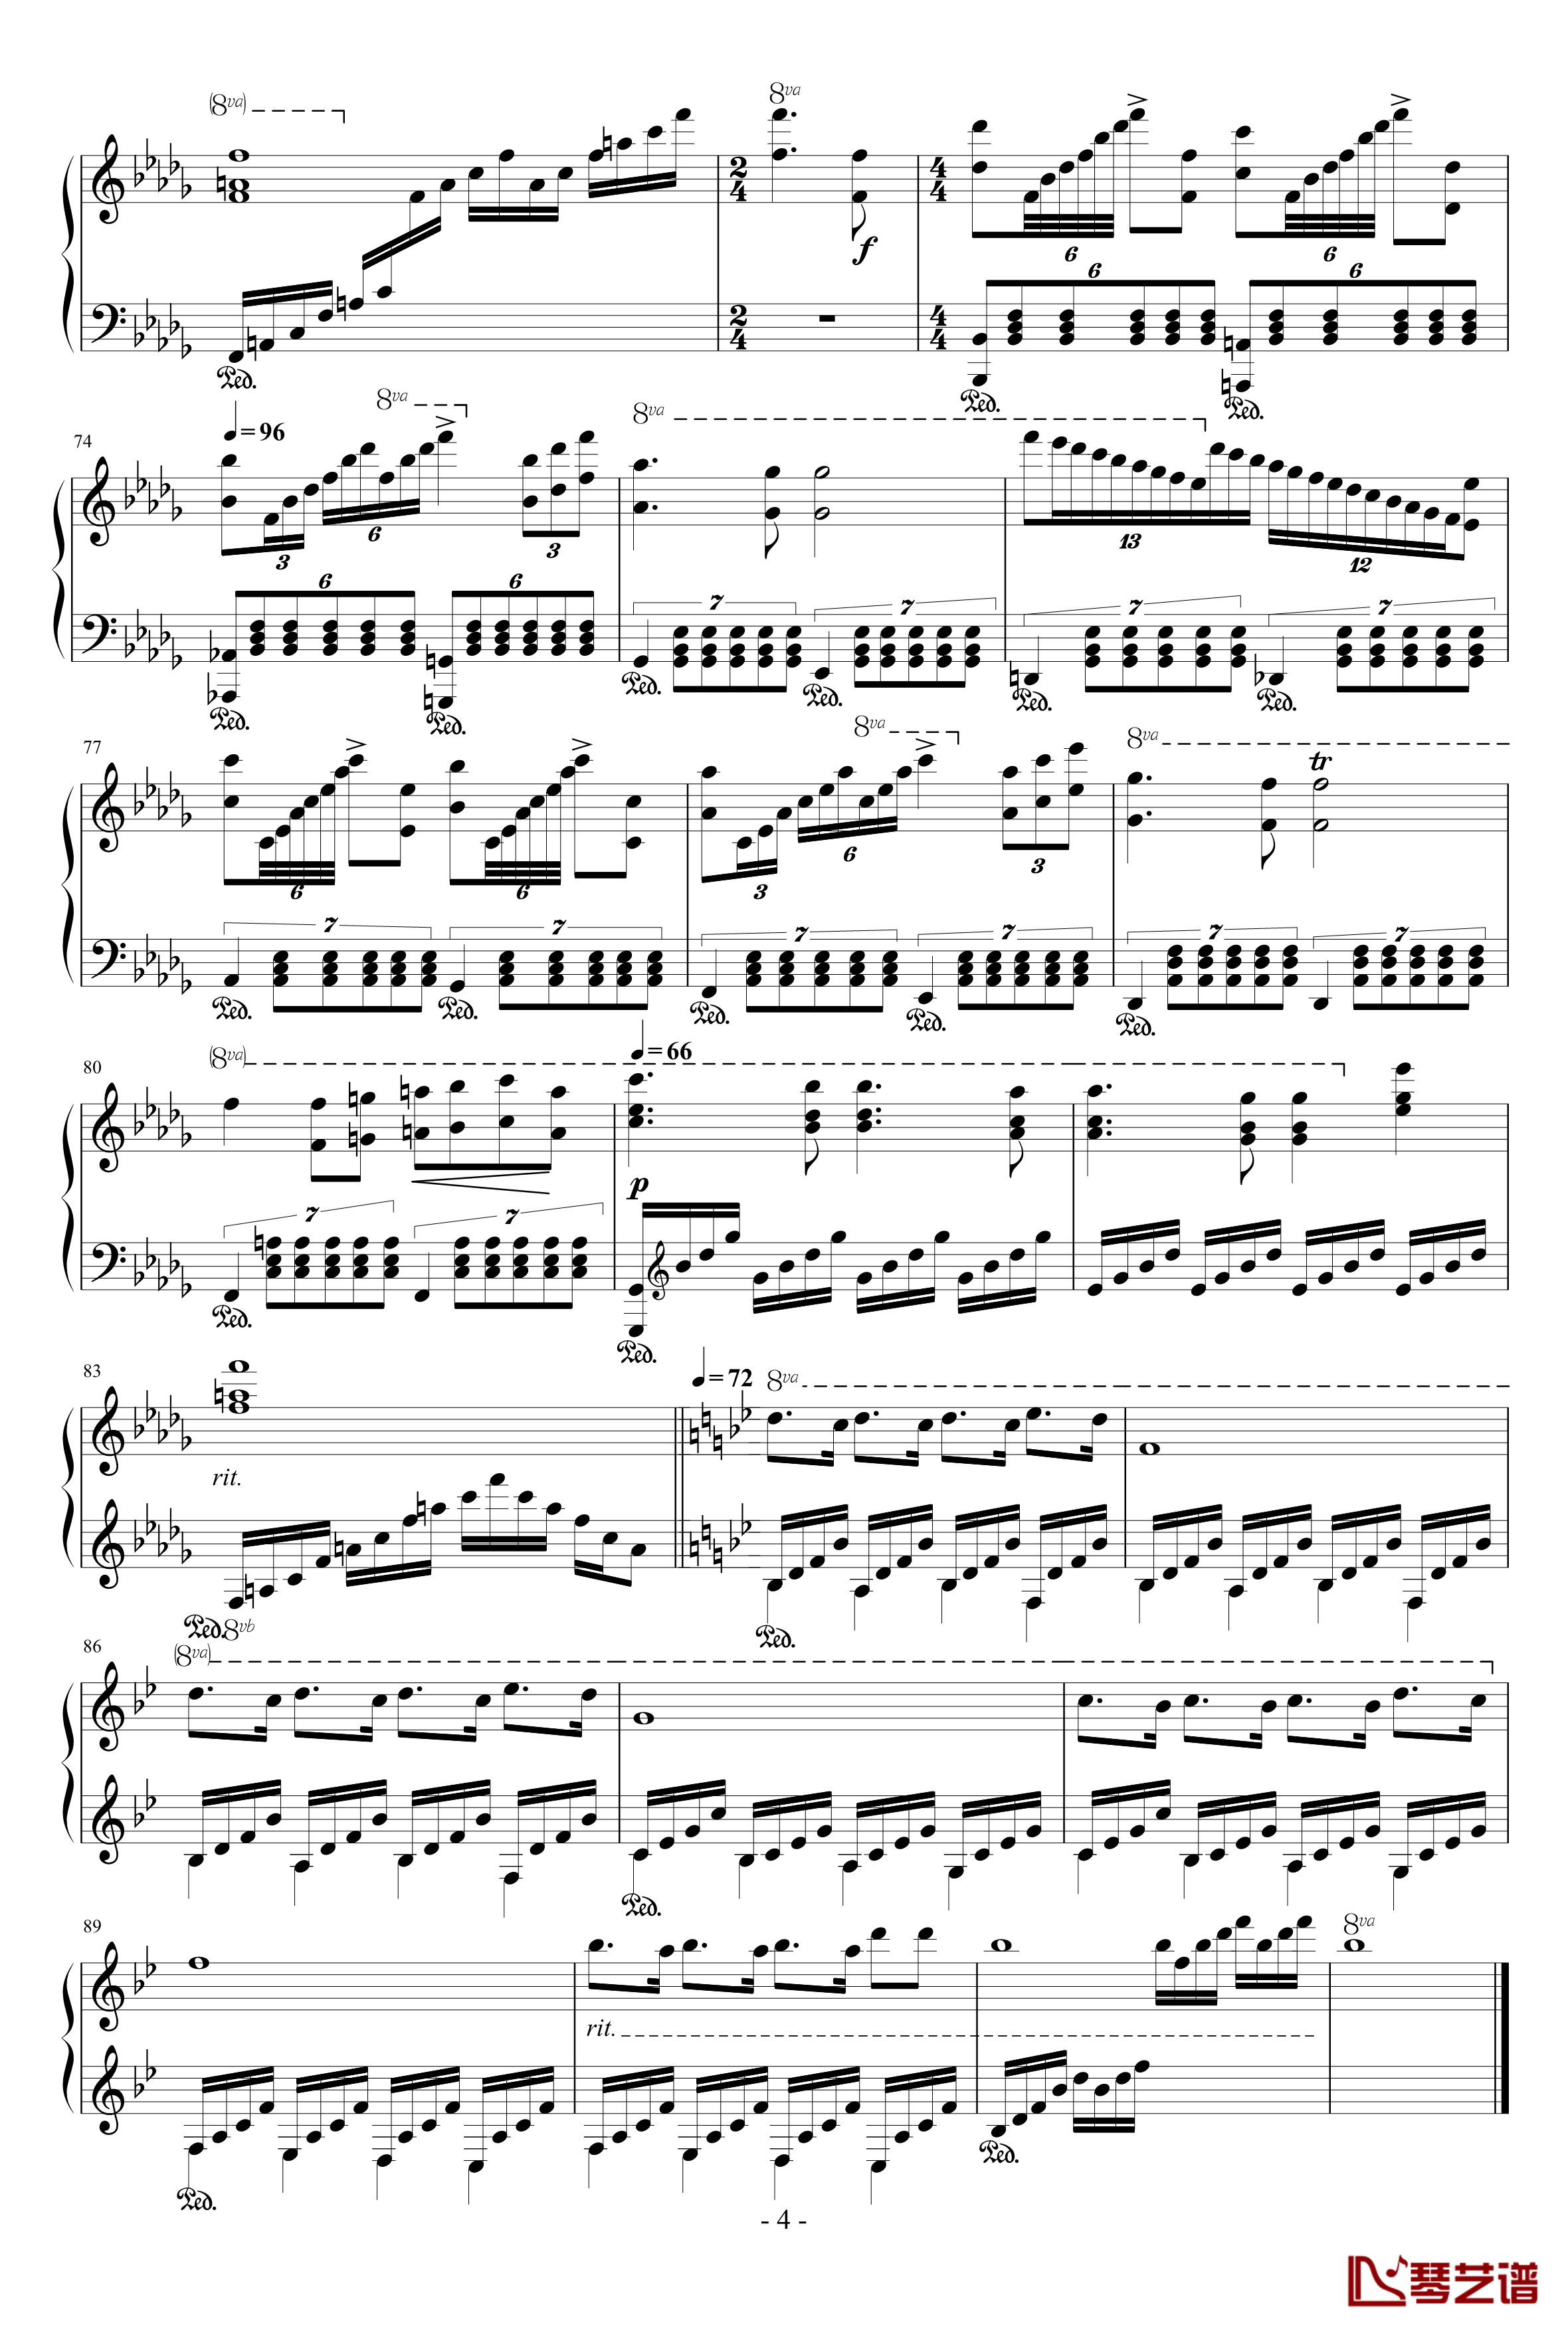 激情钢琴谱-Passionata-马克西姆-Maksim·Mrvica4